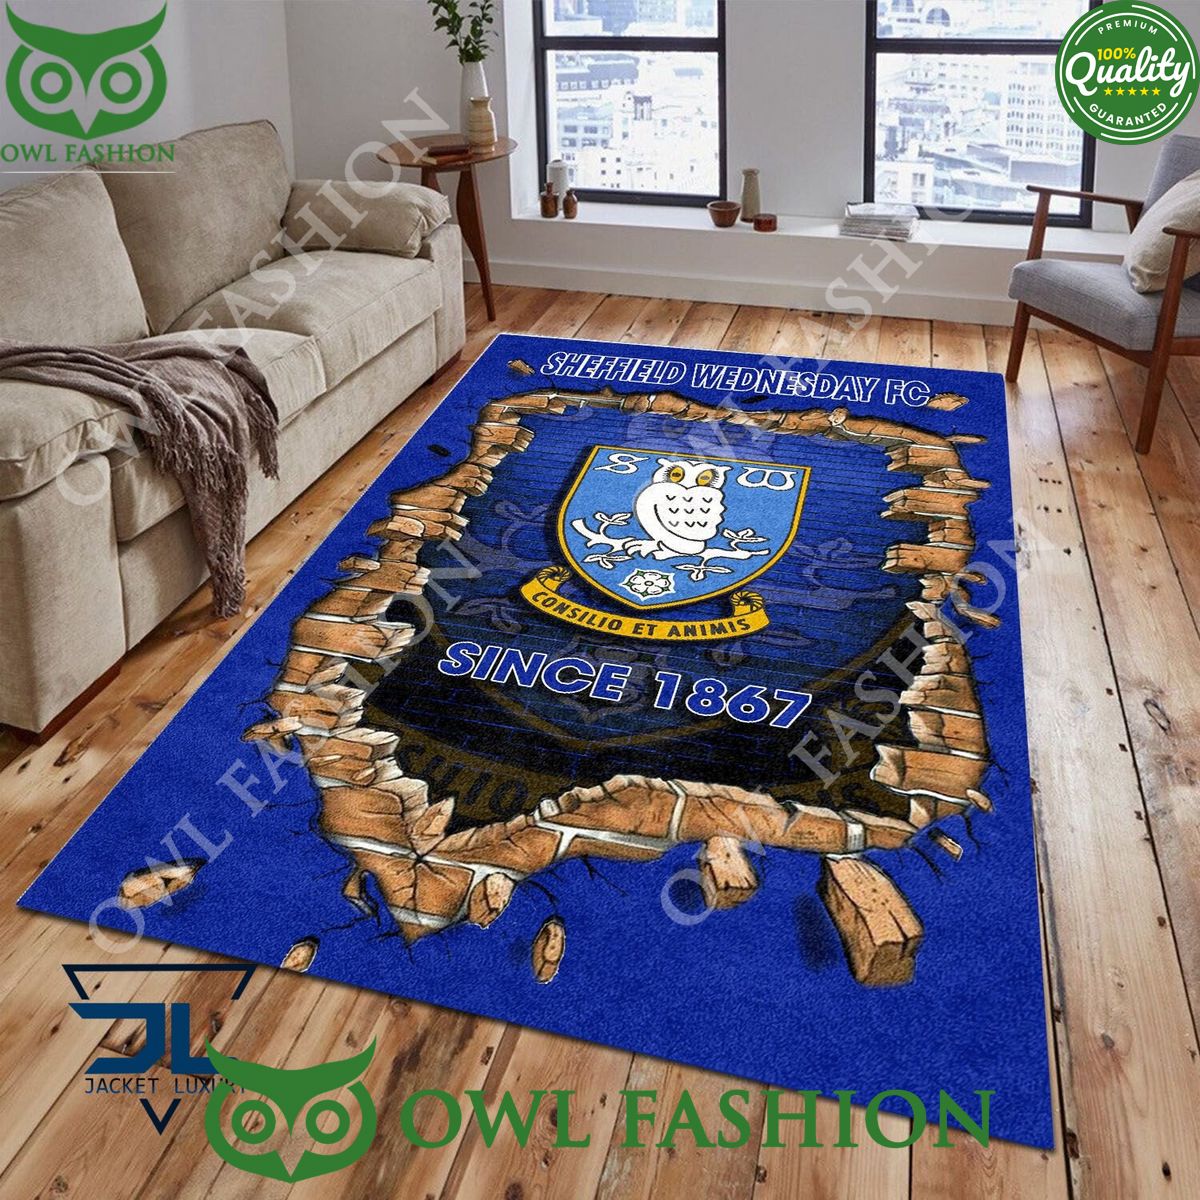 Football Sheffield Wednesday 1811 EPL Living Room Rug Carpet